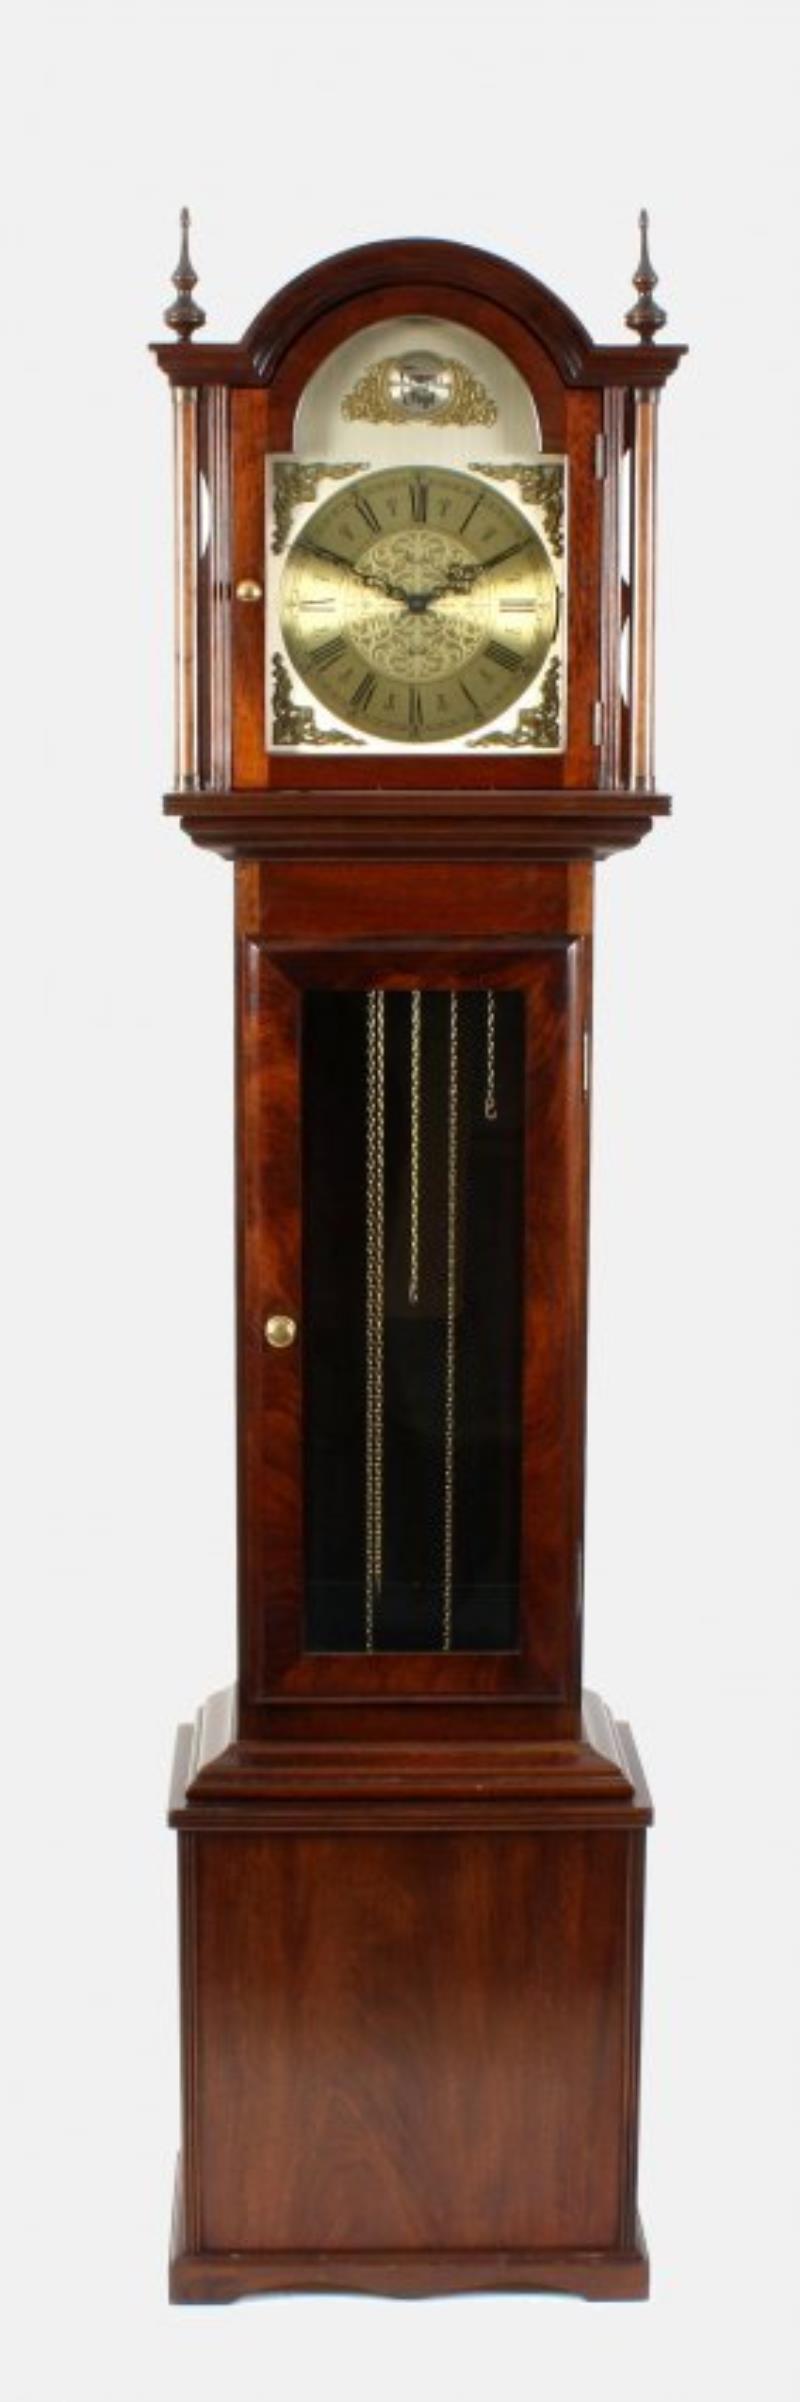 A mahogany-cased chiming longcase clock